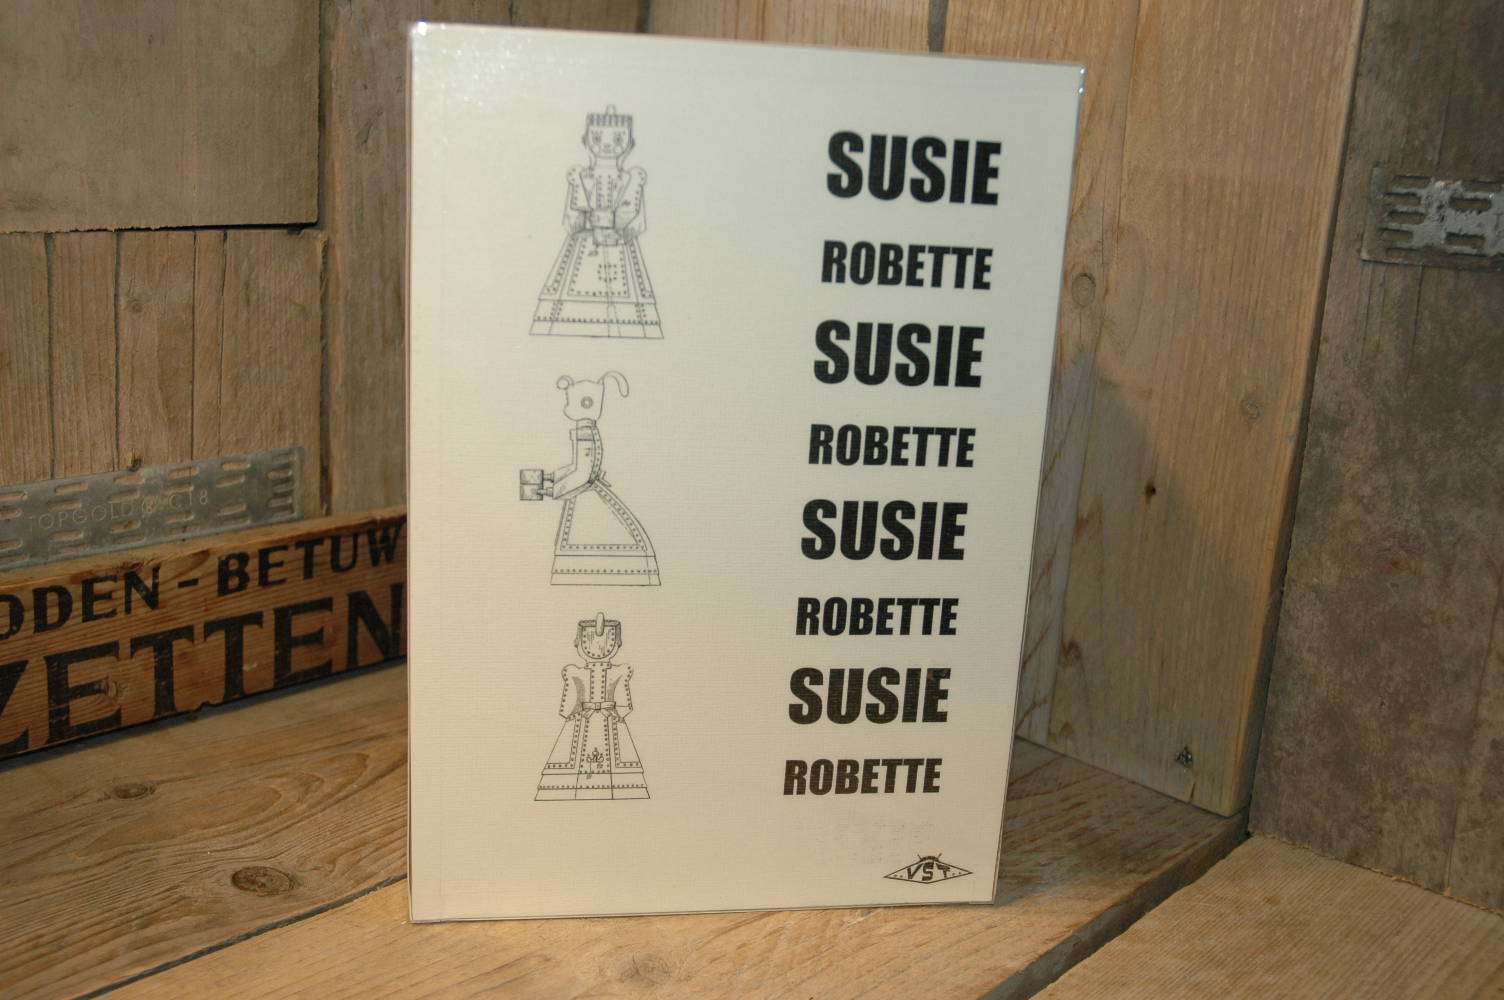 VST - Susie Robette